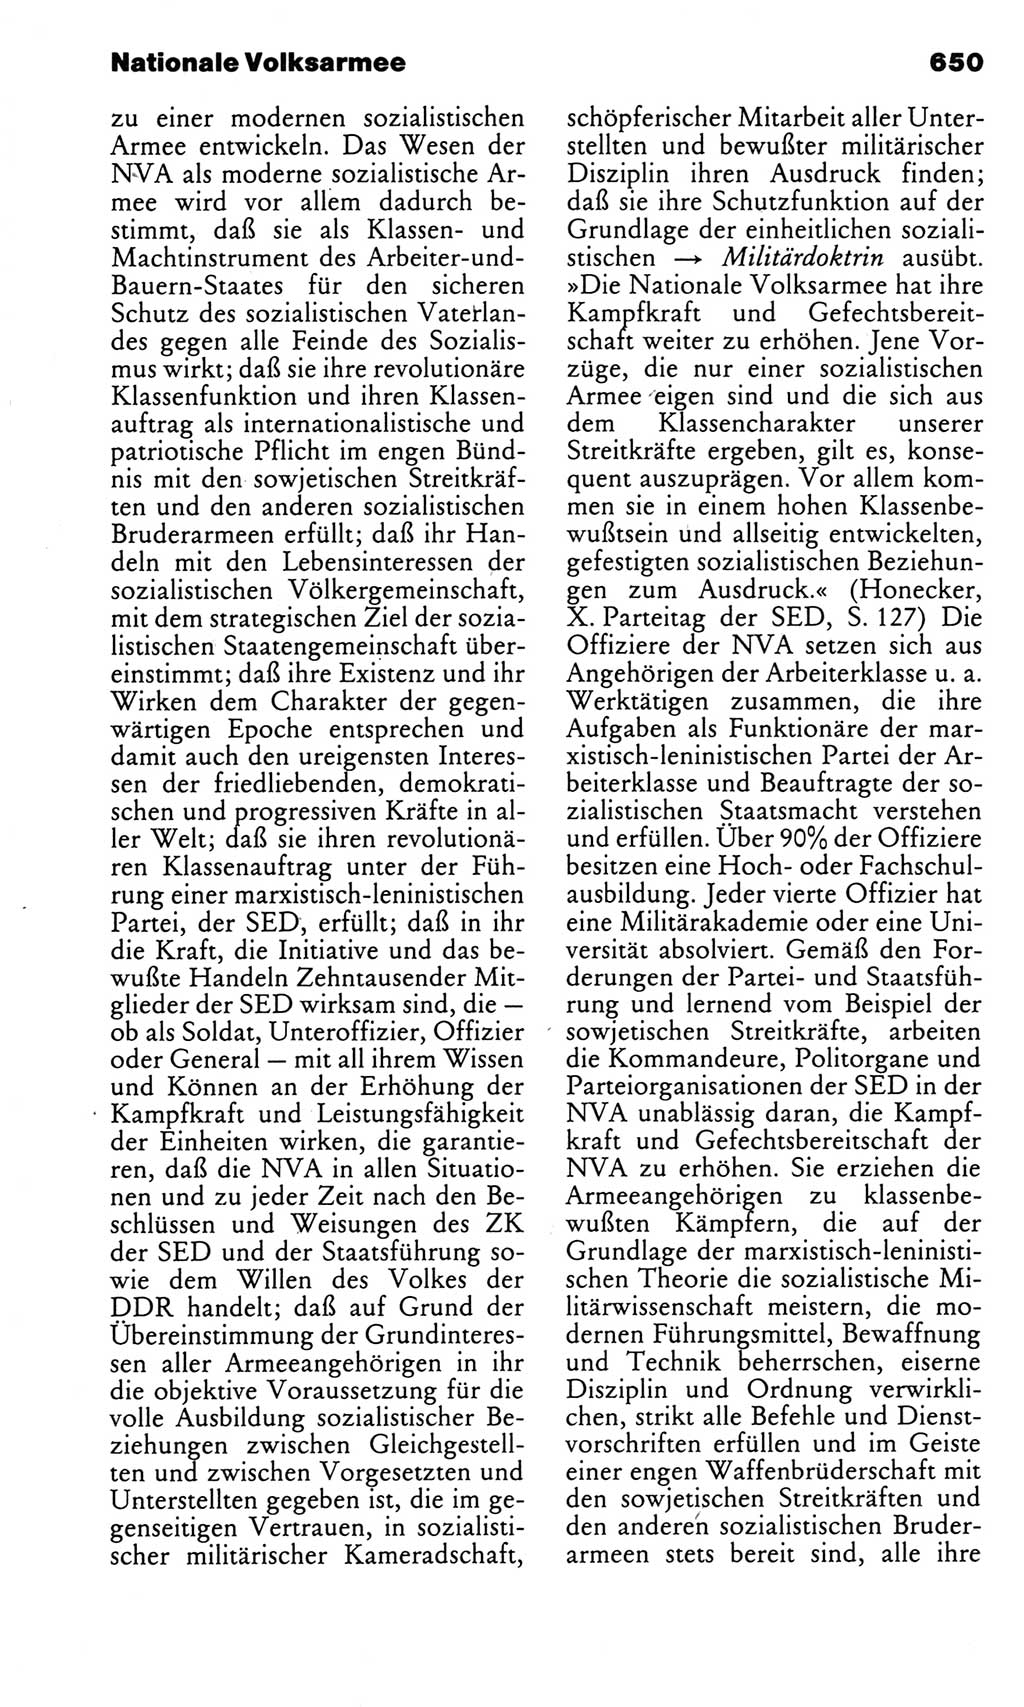 Kleines politisches Wörterbuch [Deutsche Demokratische Republik (DDR)] 1983, Seite 650 (Kl. pol. Wb. DDR 1983, S. 650)